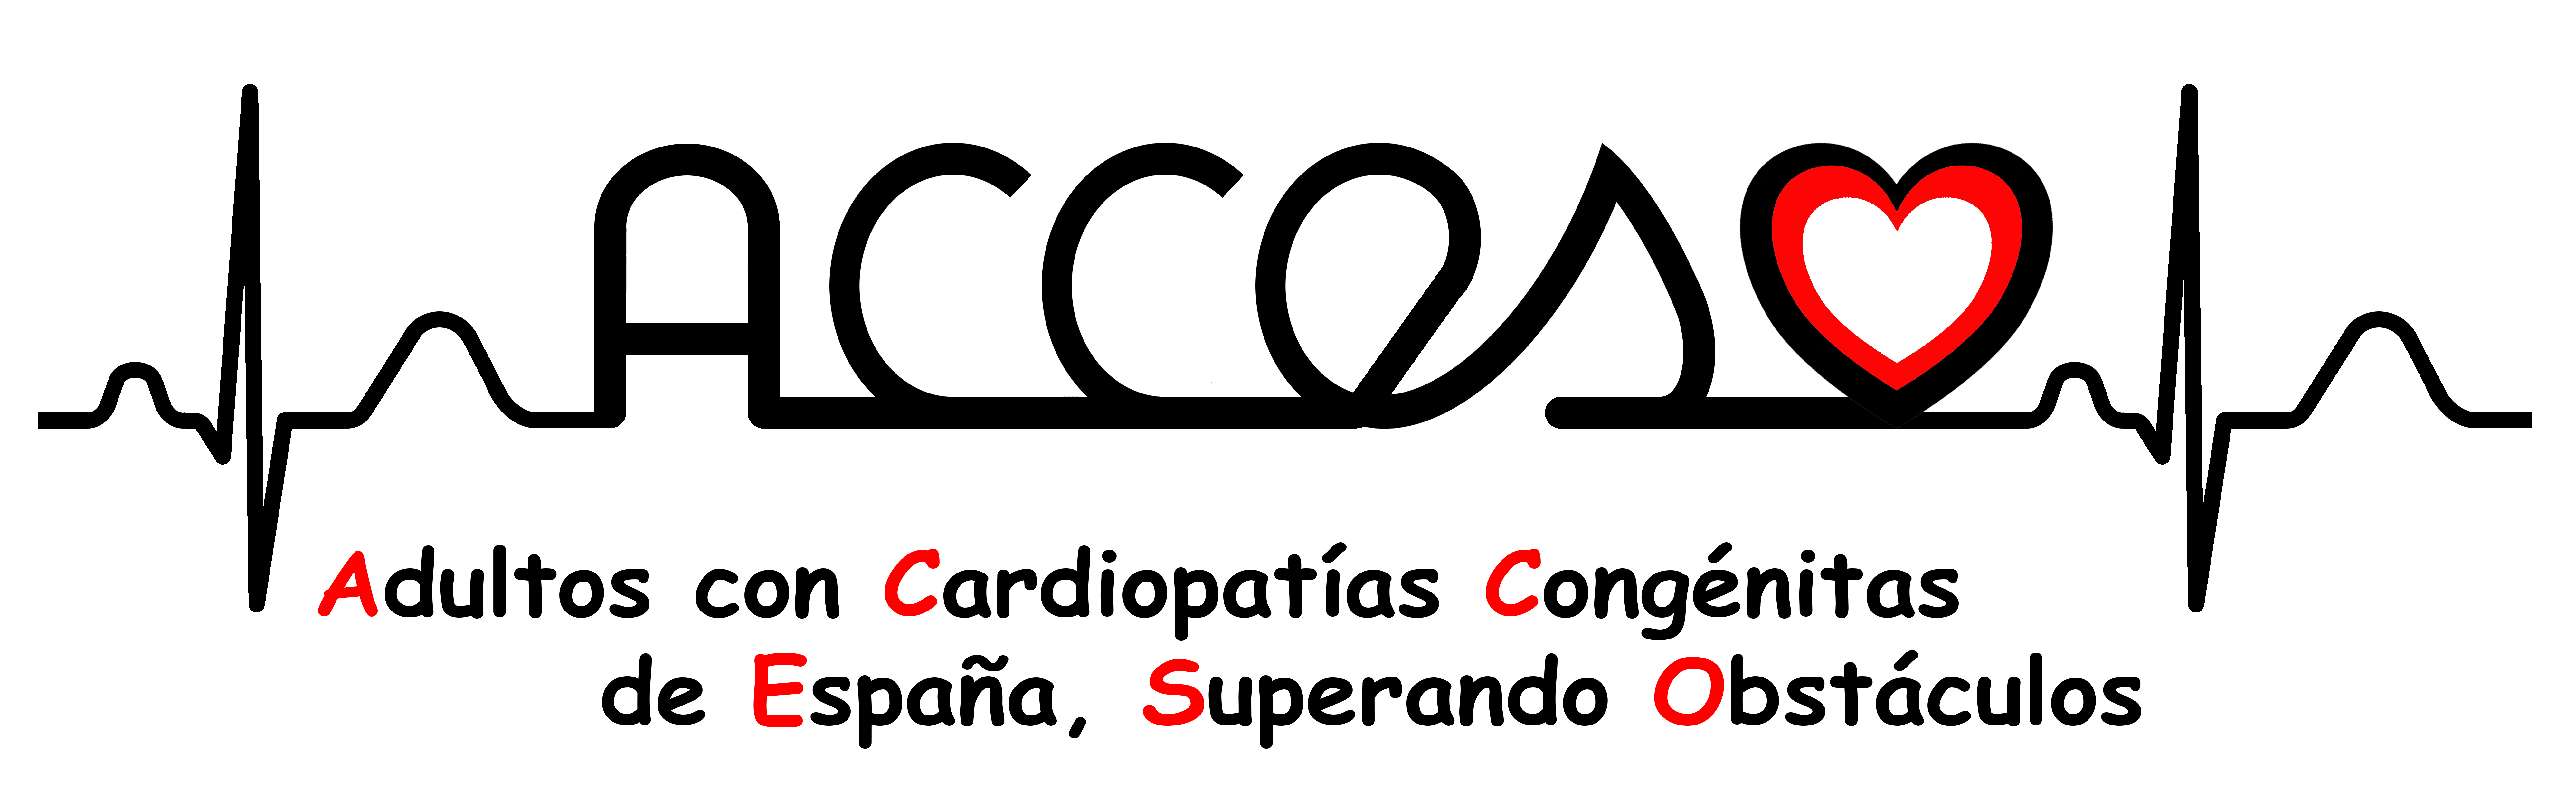 Adultos con Cardiopatías Congénitas de España Superando Obstáculos (ACCESO)